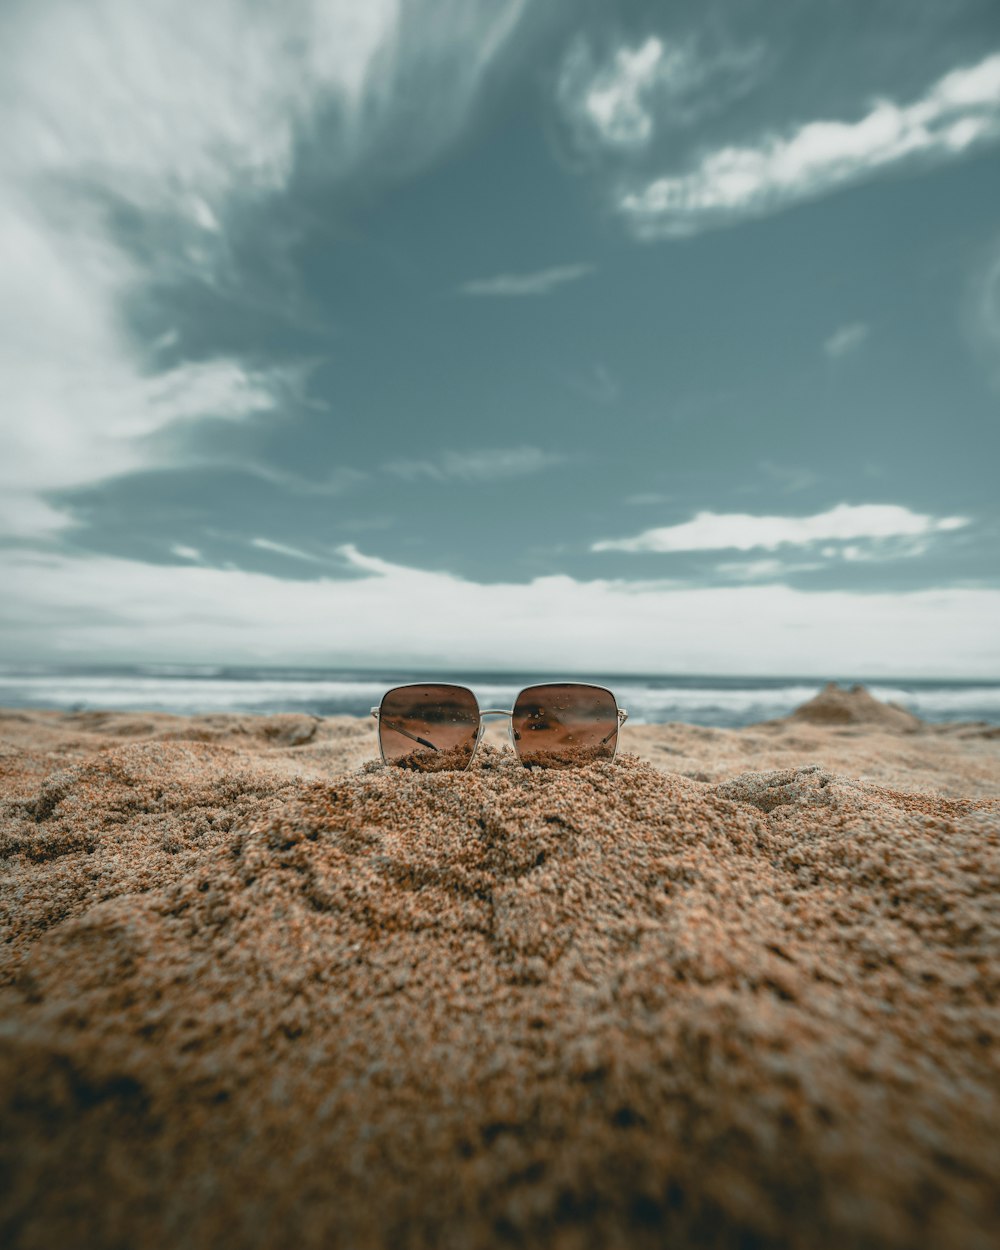 occhiali da sole con lente marrone sulla sabbia nella fotografia ad angolo basso